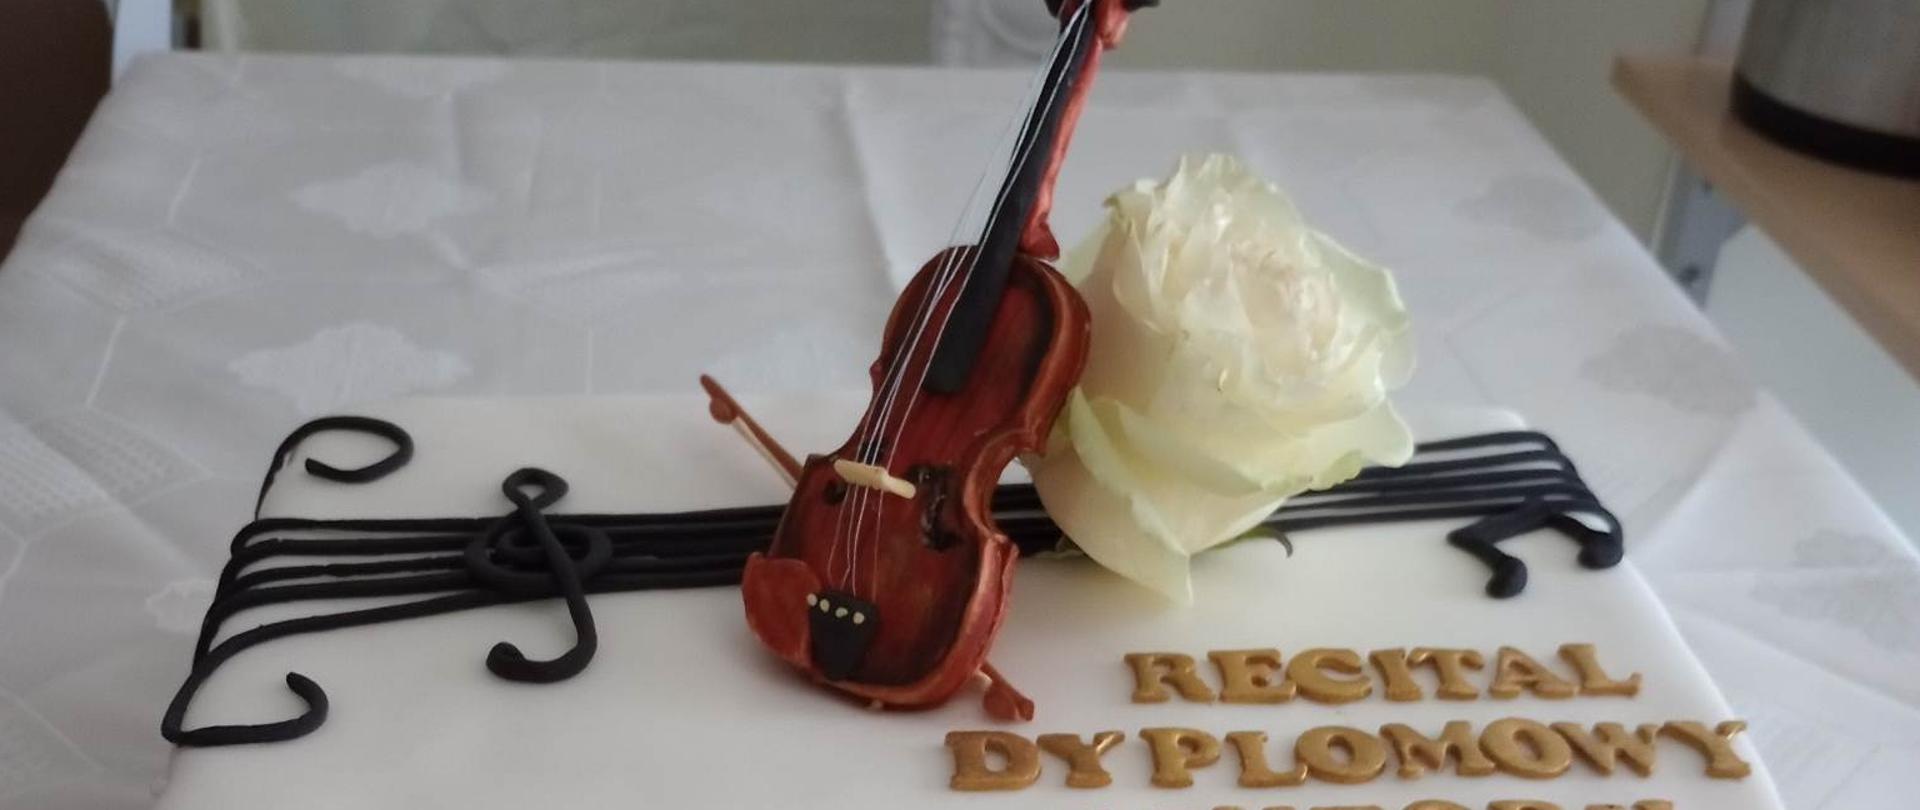 Zdjęcie tortu z napisem "Recital dyplomowy Wiktorii"